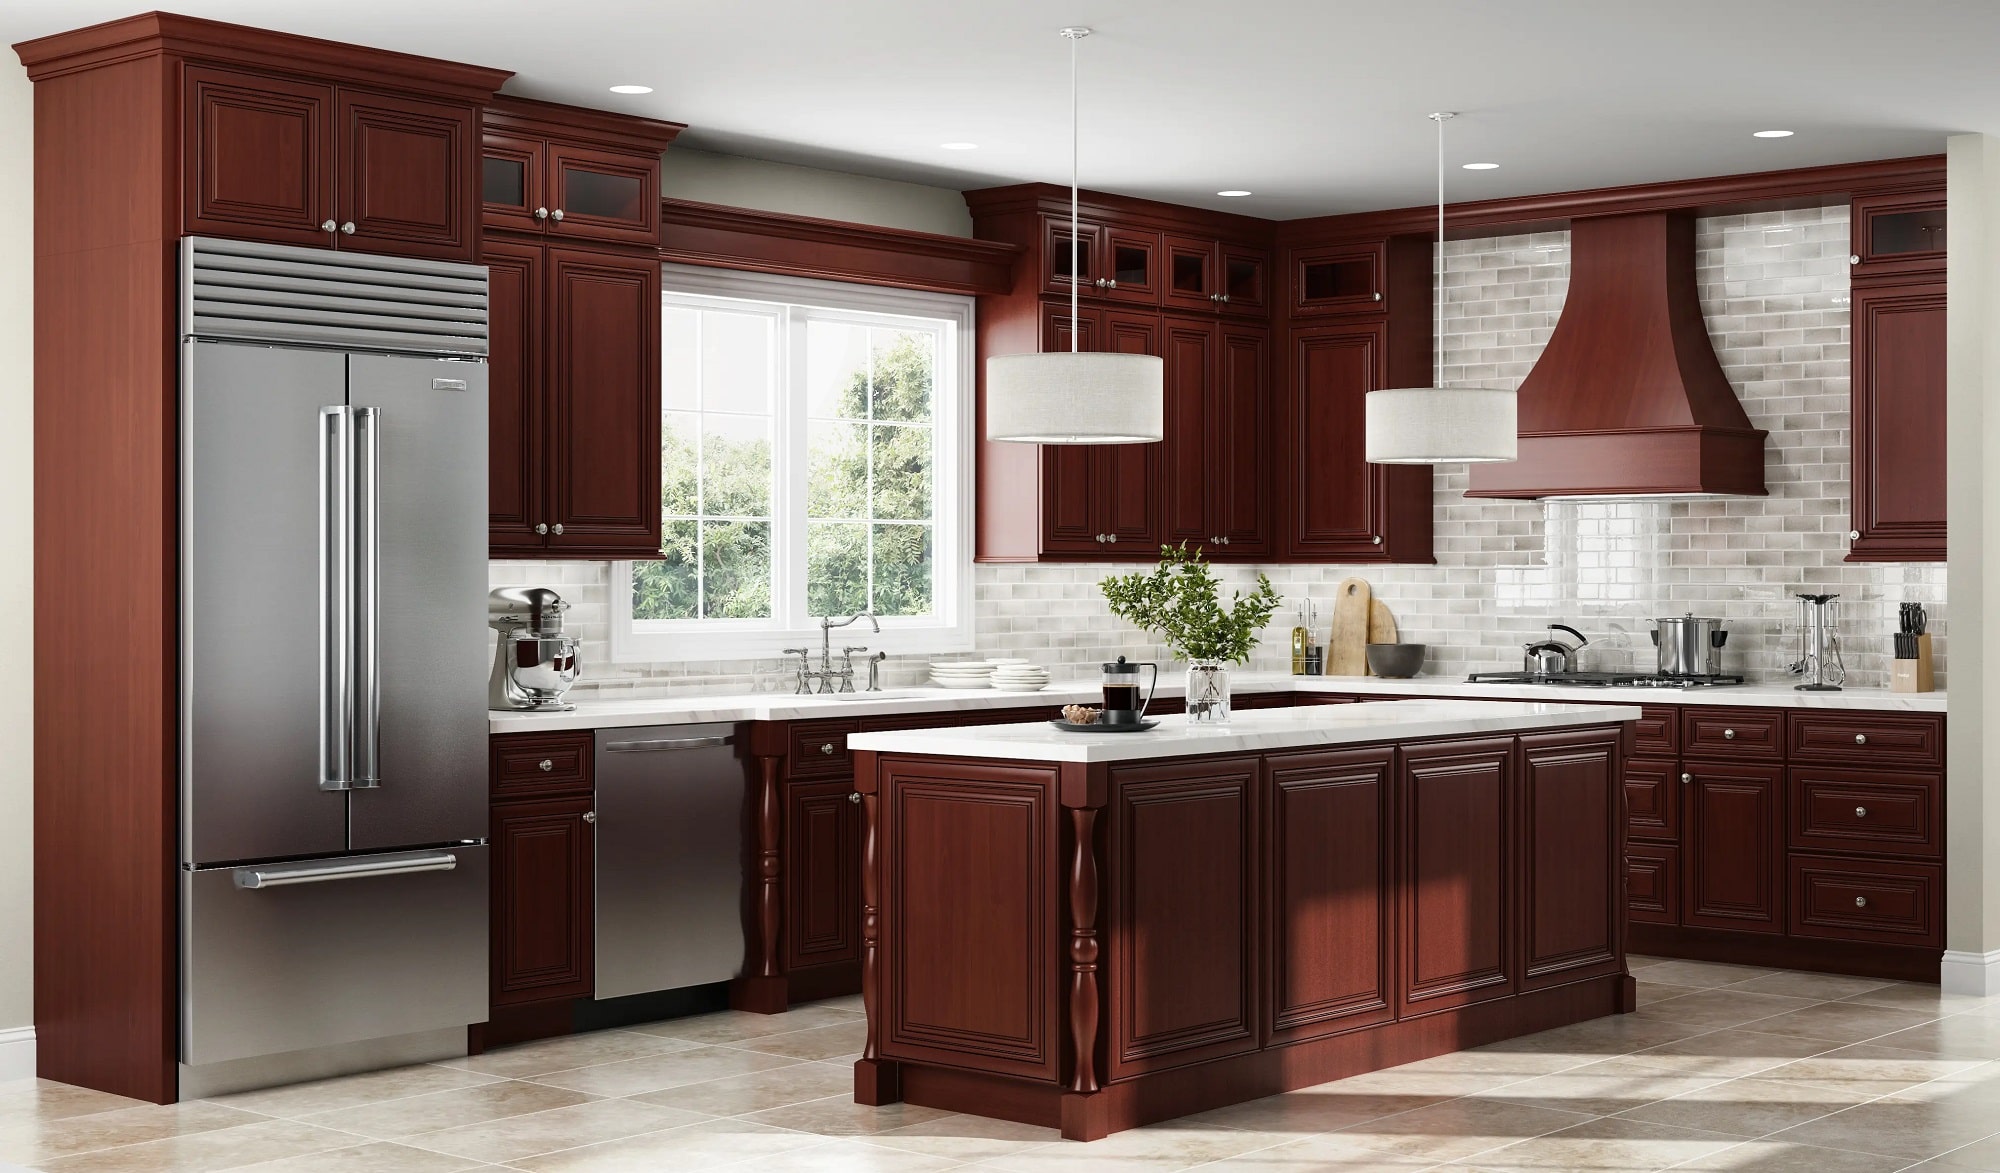 رنگ قرمز تلخ برای کابینت بزرگ آشپزخانه به سبک کلاسیک